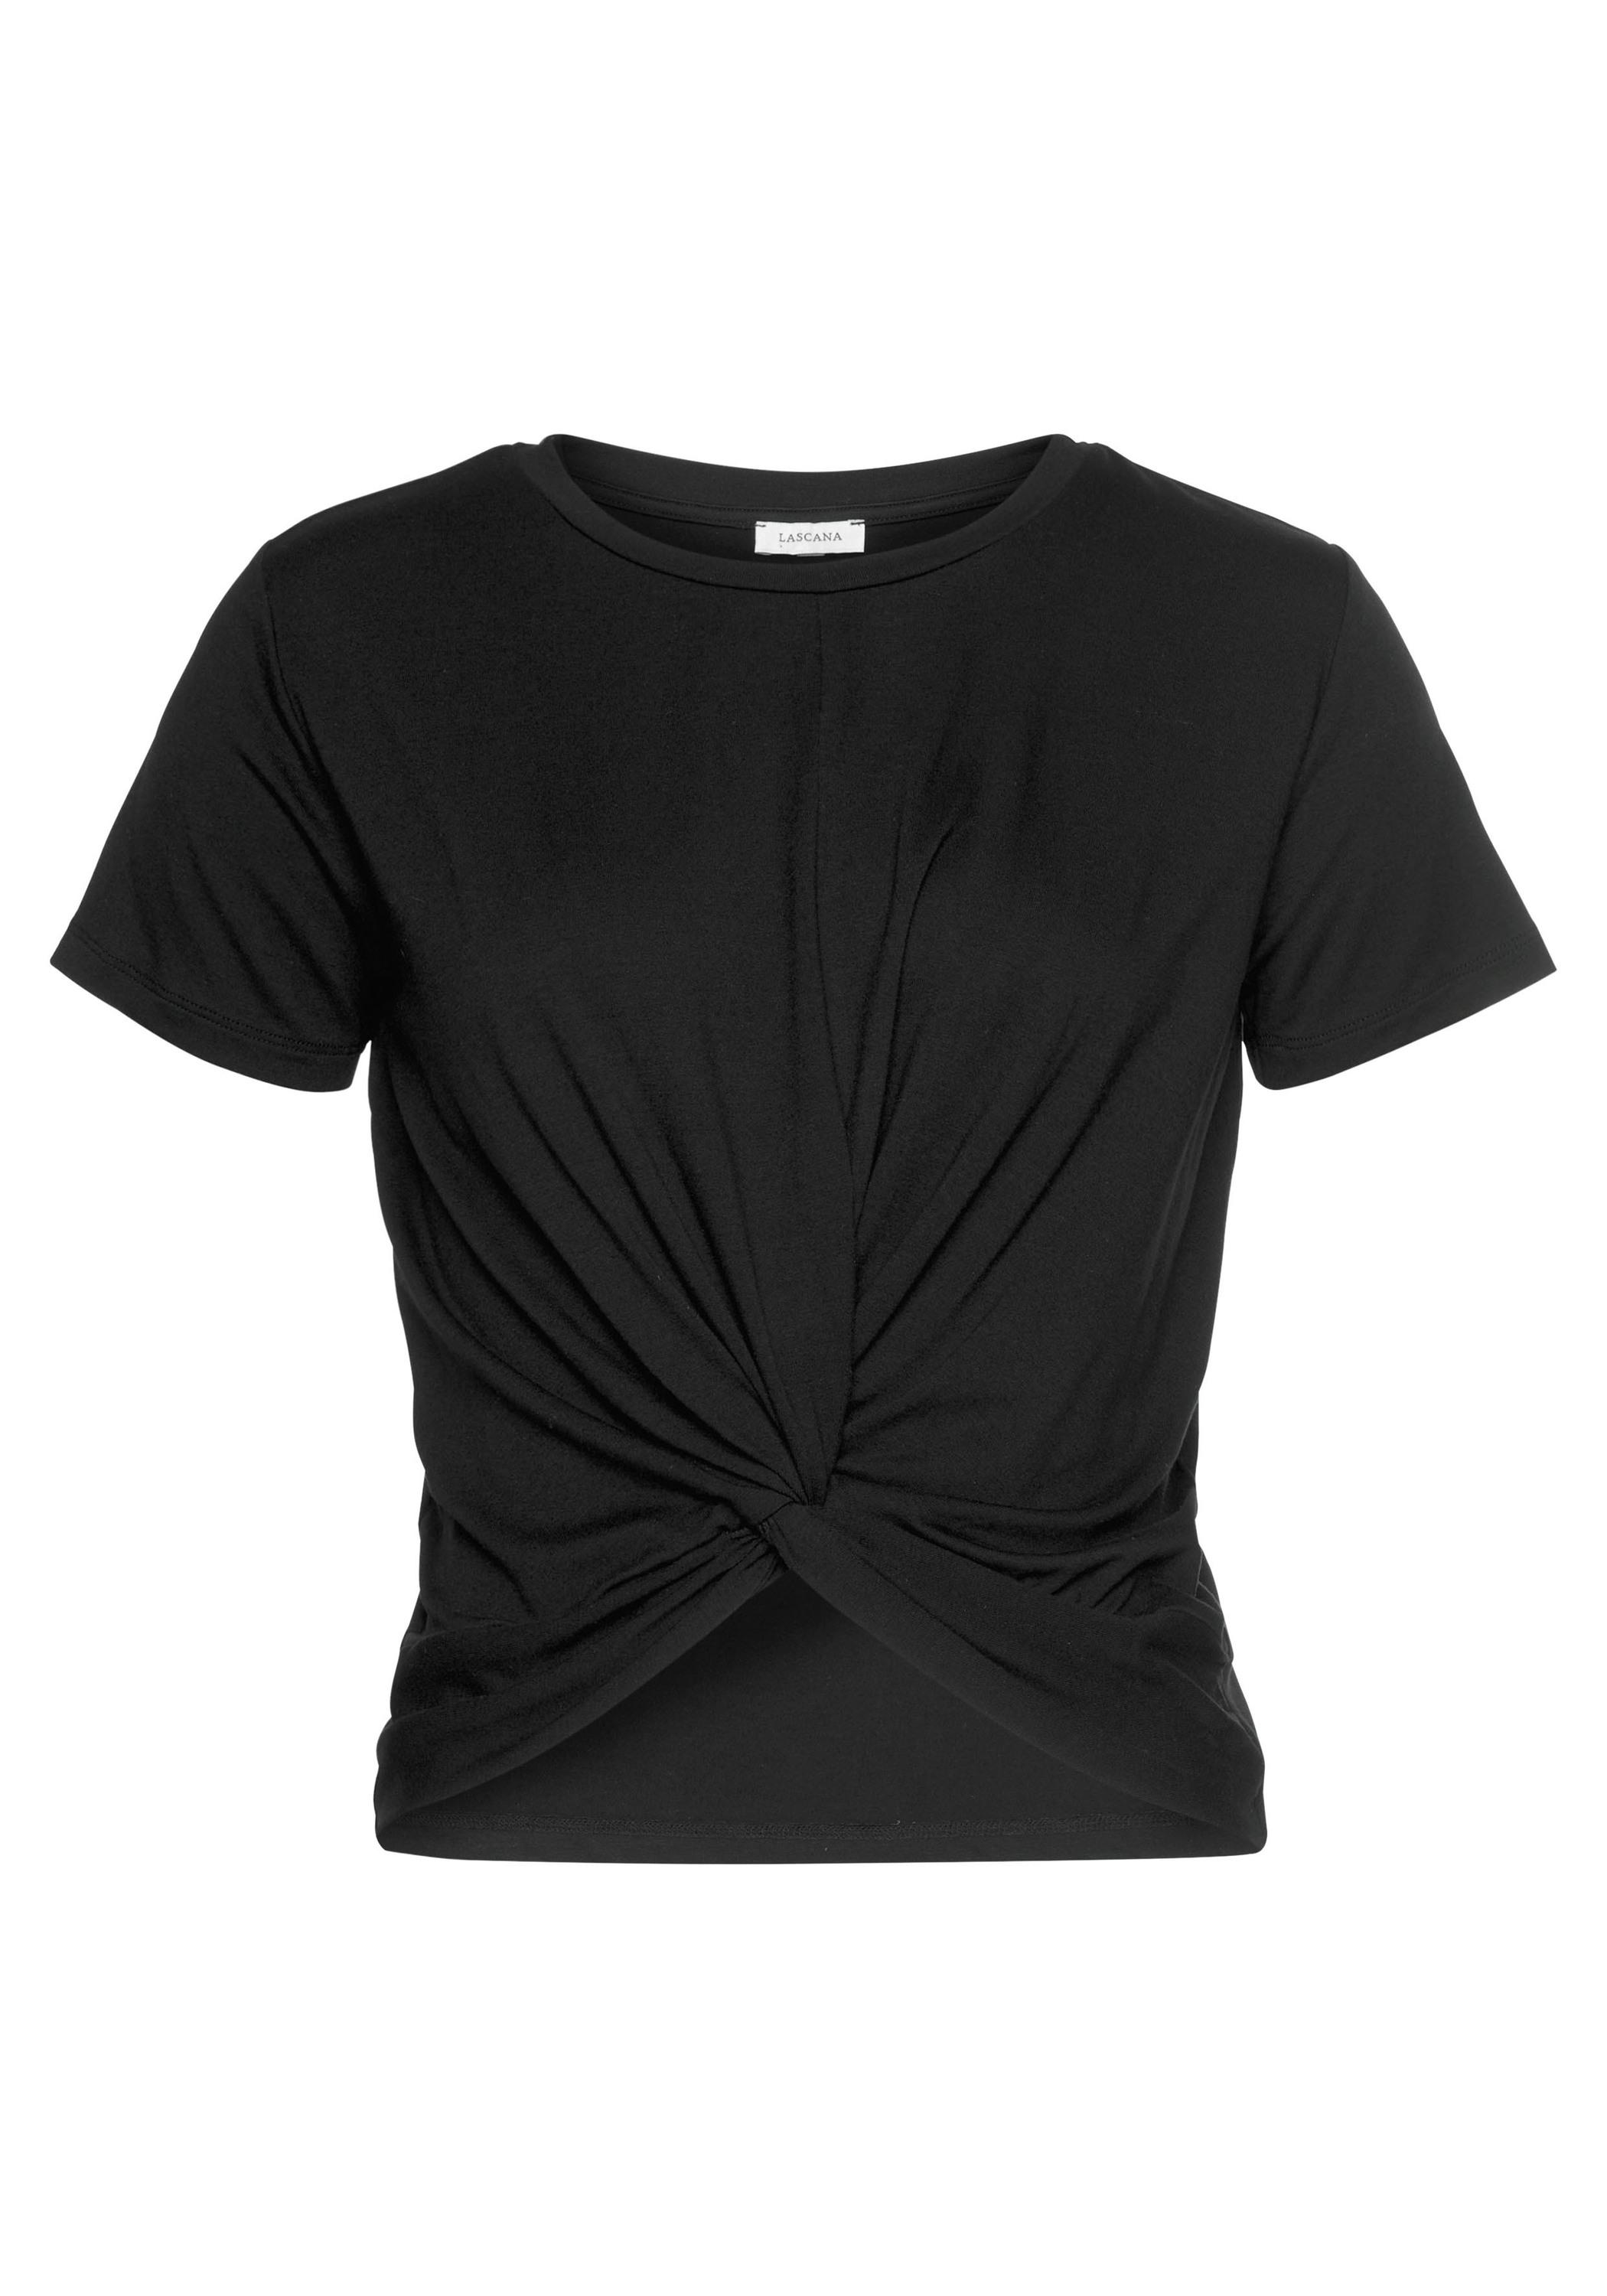 Lascana T-Shirt Damen schwarz kaufen Online im von SportScheck Shop